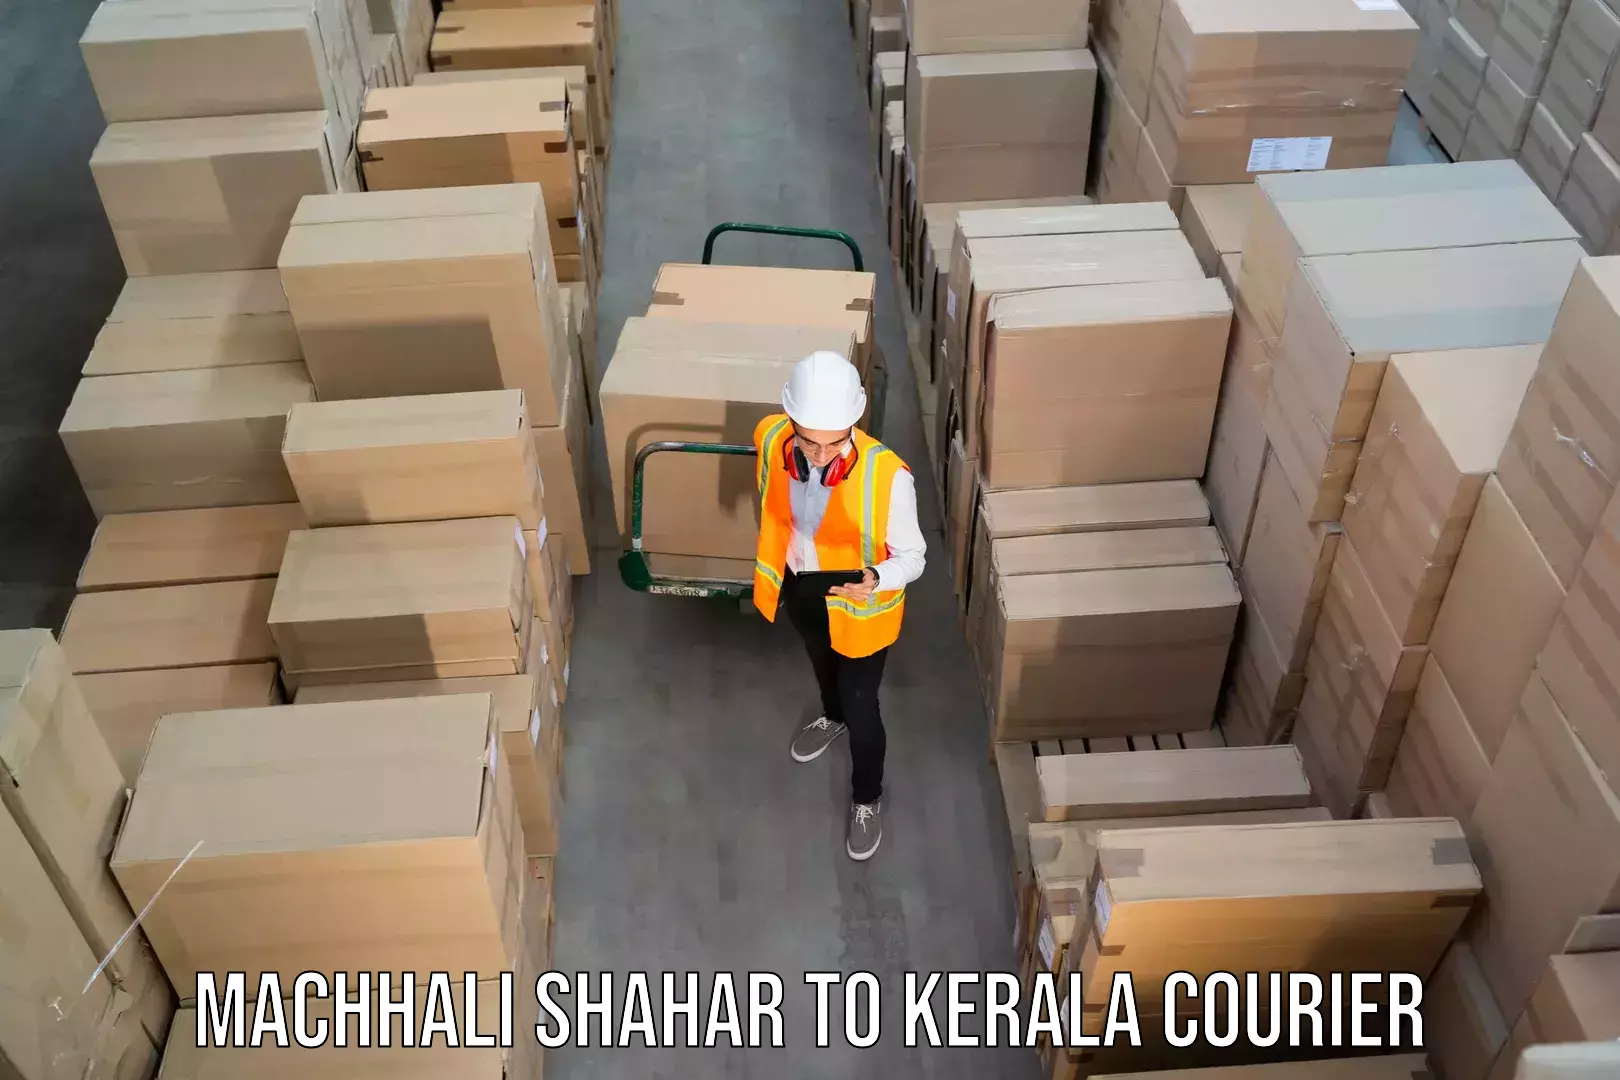 Premium courier services Machhali Shahar to IIIT Kottayam